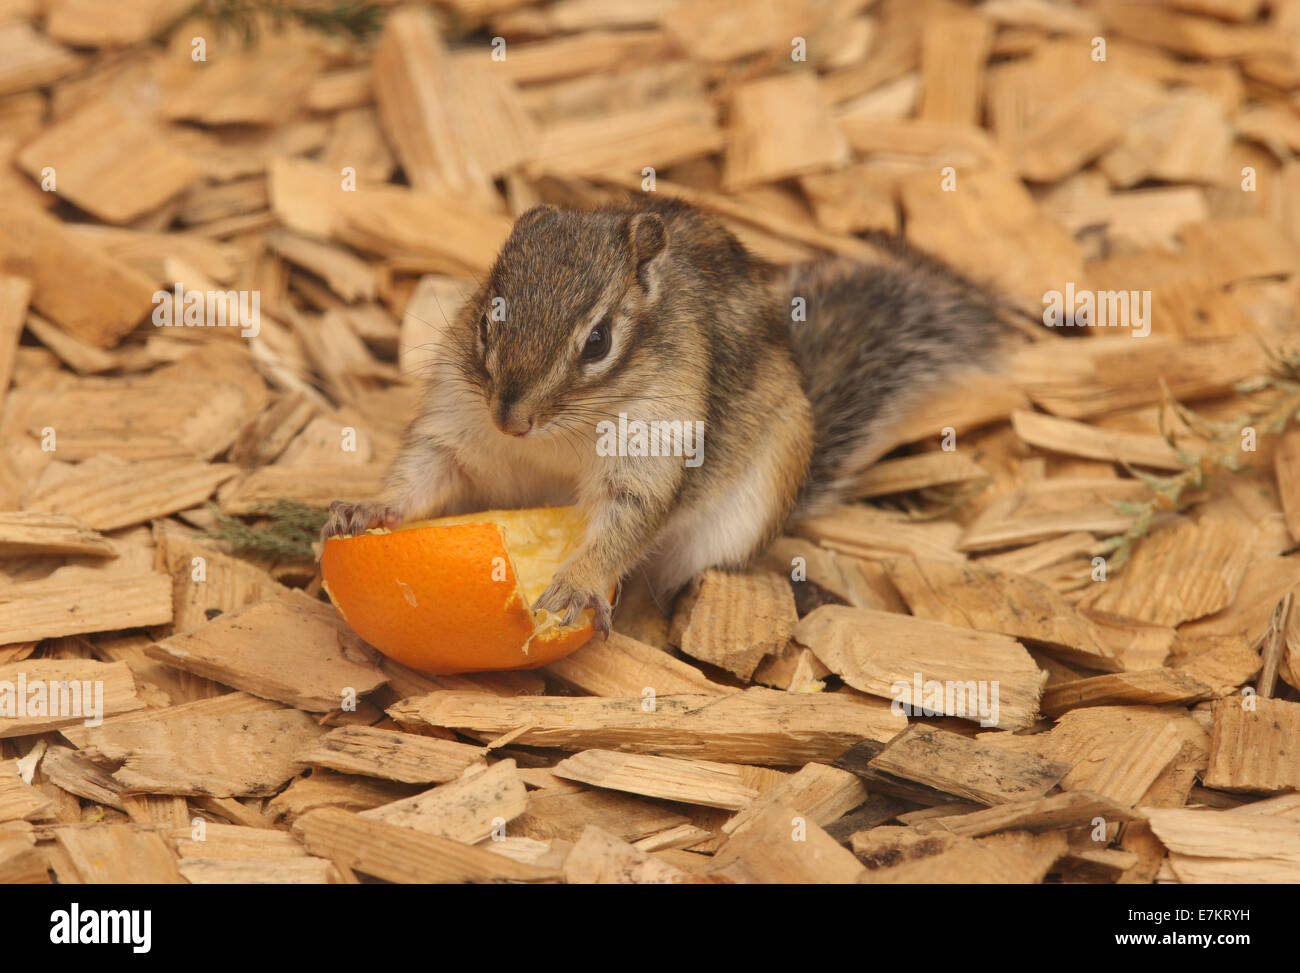 A cute Chipmunk eating an orange Stock Photo